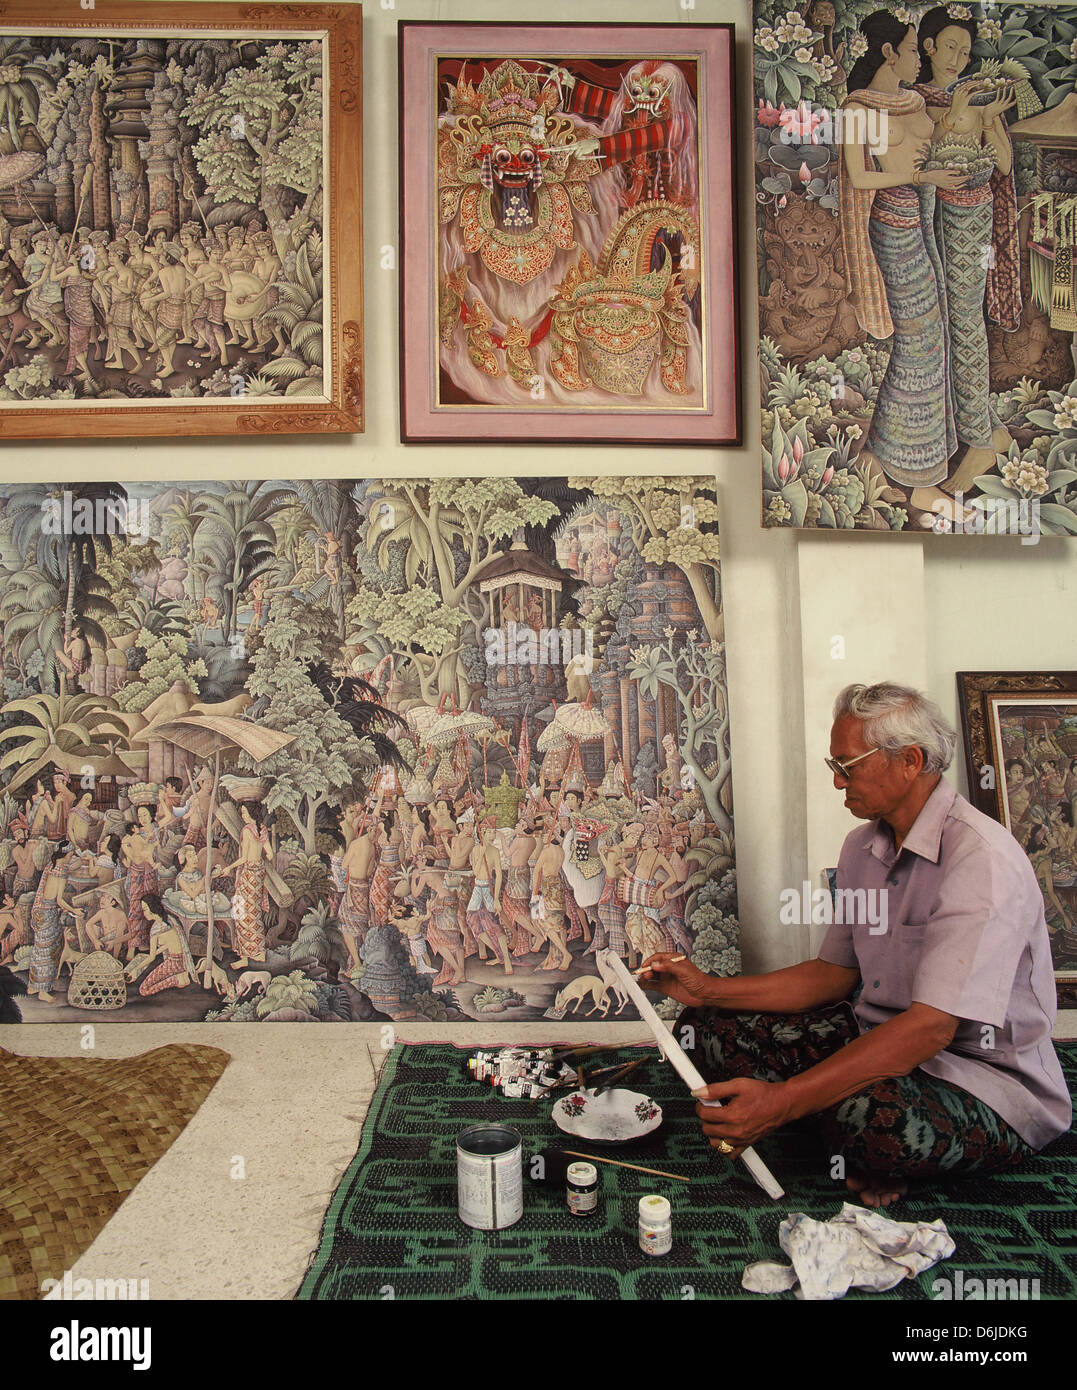 Ketut Liyer, famoso pittore, uomo medicina da Ubud, sappiamo dal libro  mangiare amore e preda Foto stock - Alamy